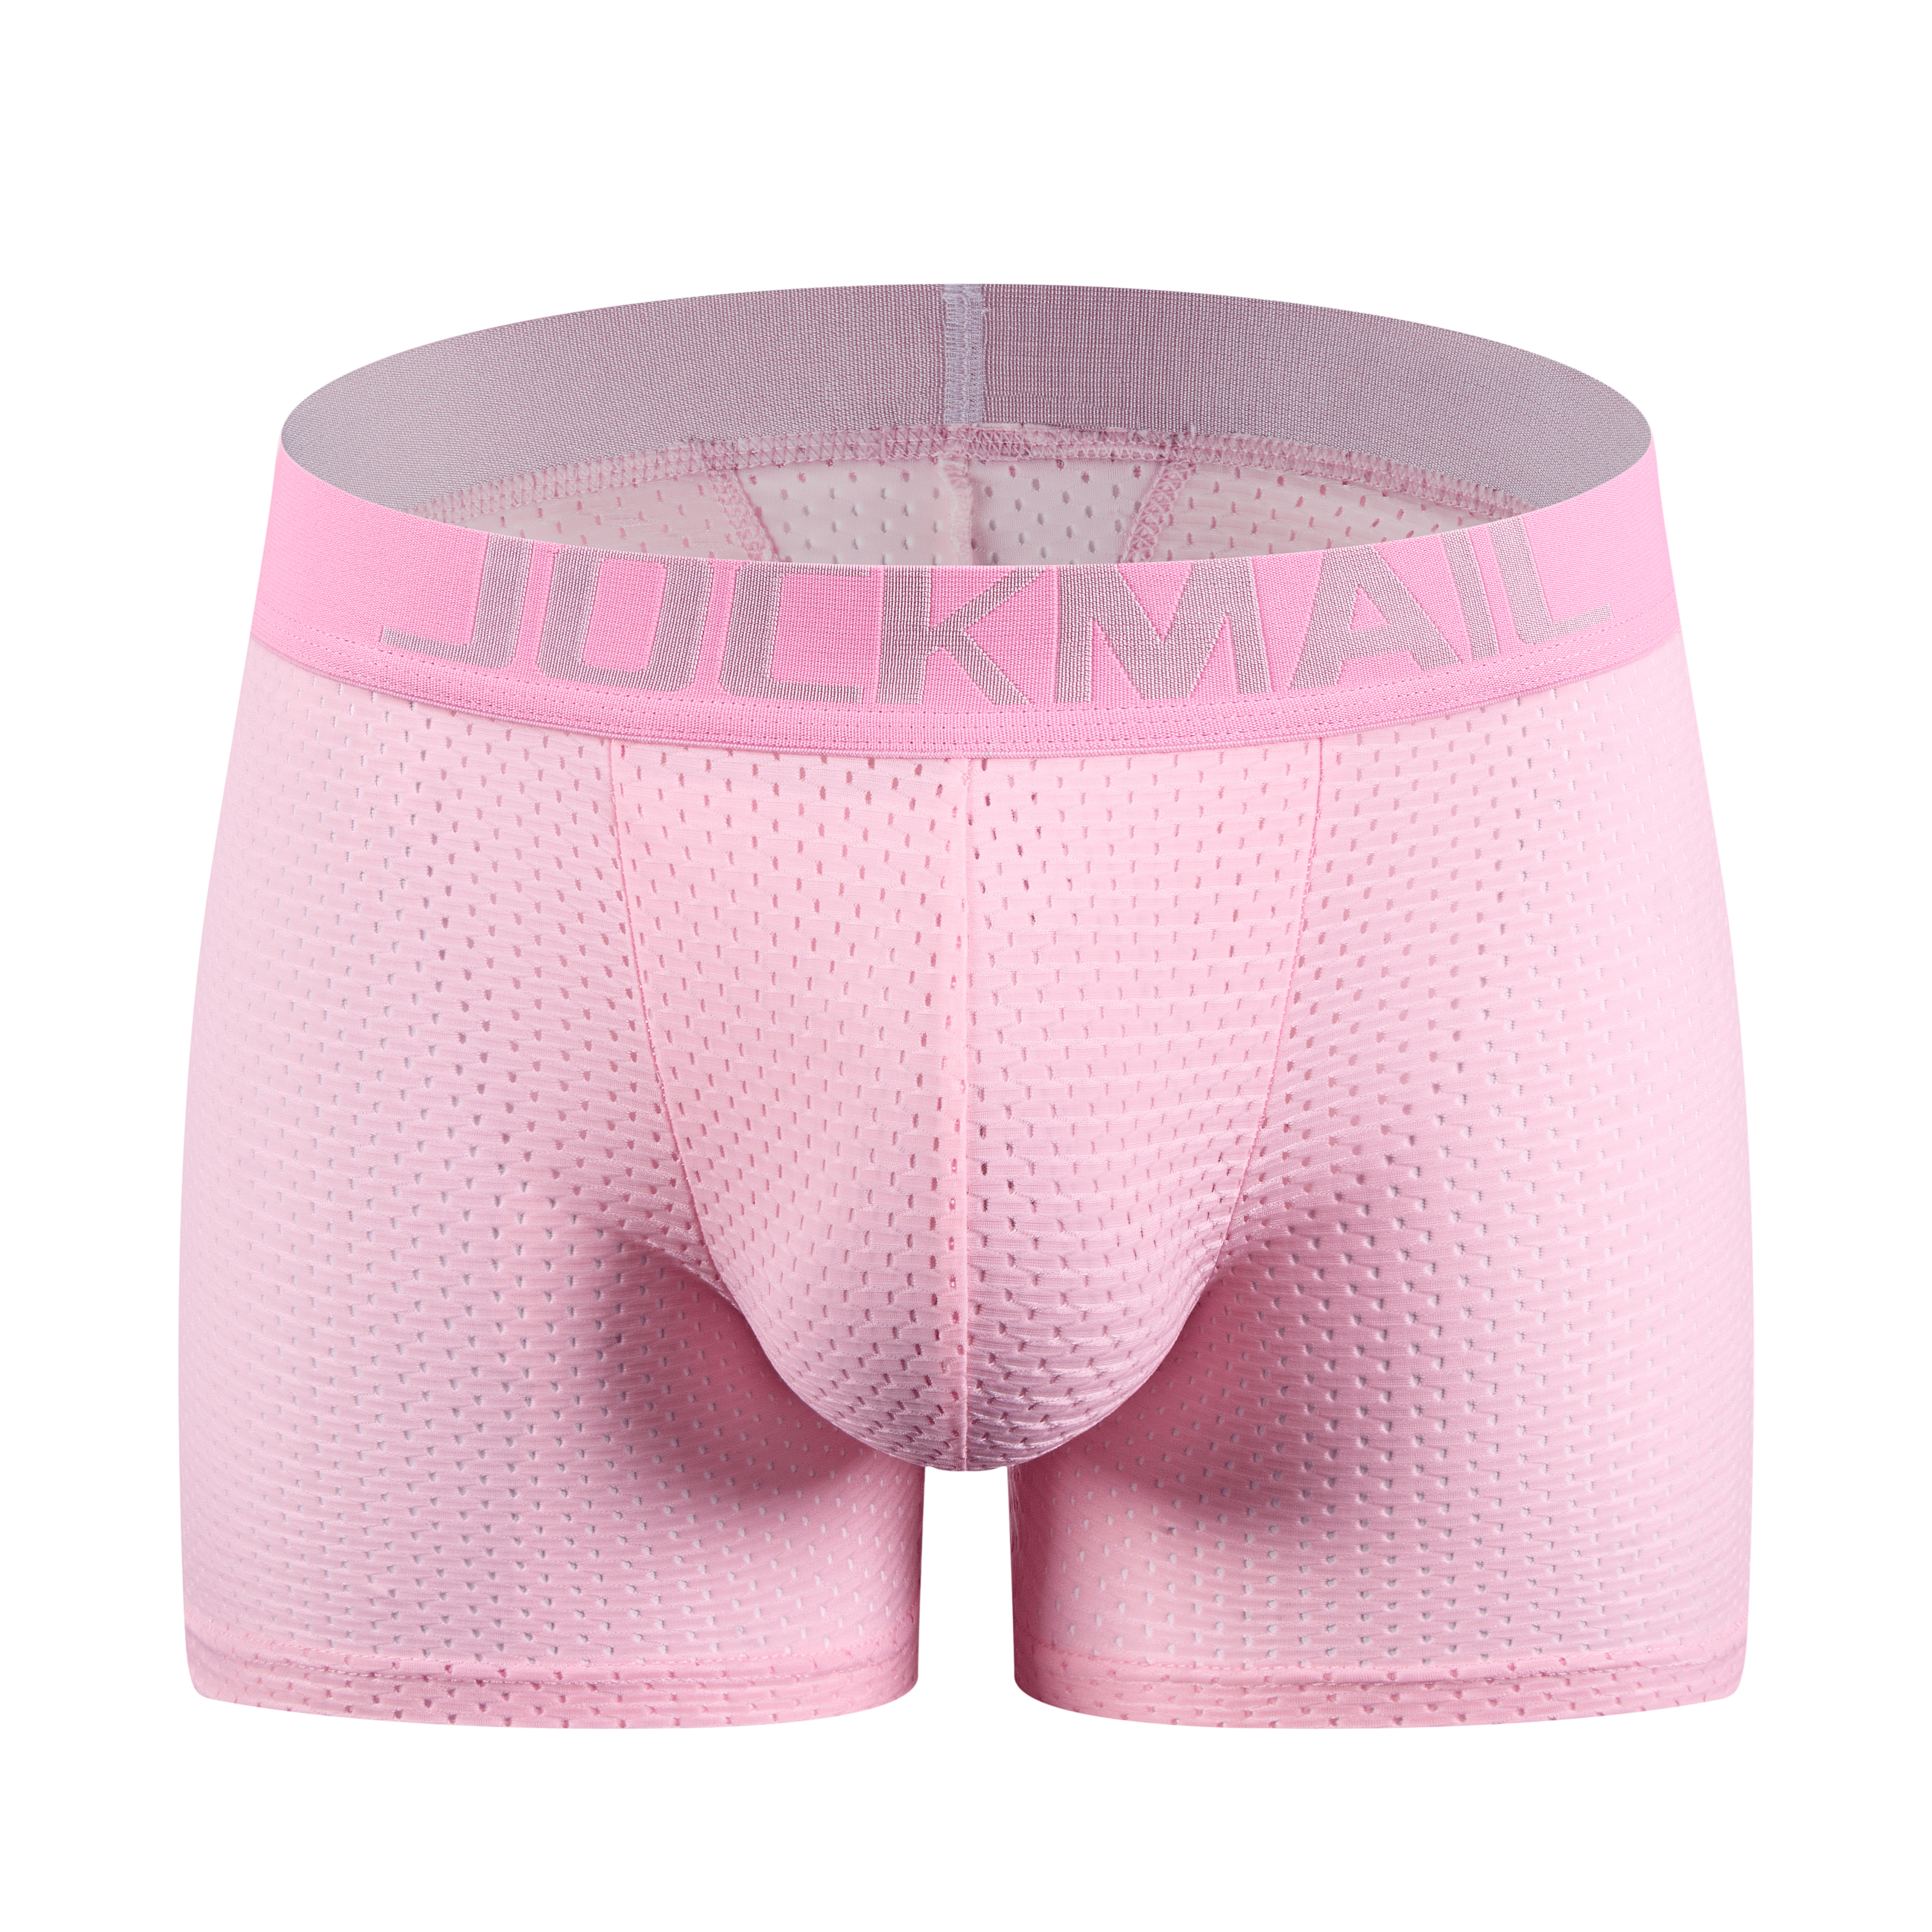 JOCKMAIL Men's Padded Butt Enhancing Underwear Men's Fitted Butt Lifter  Brief Removable Contour Pads Butt Enhancement